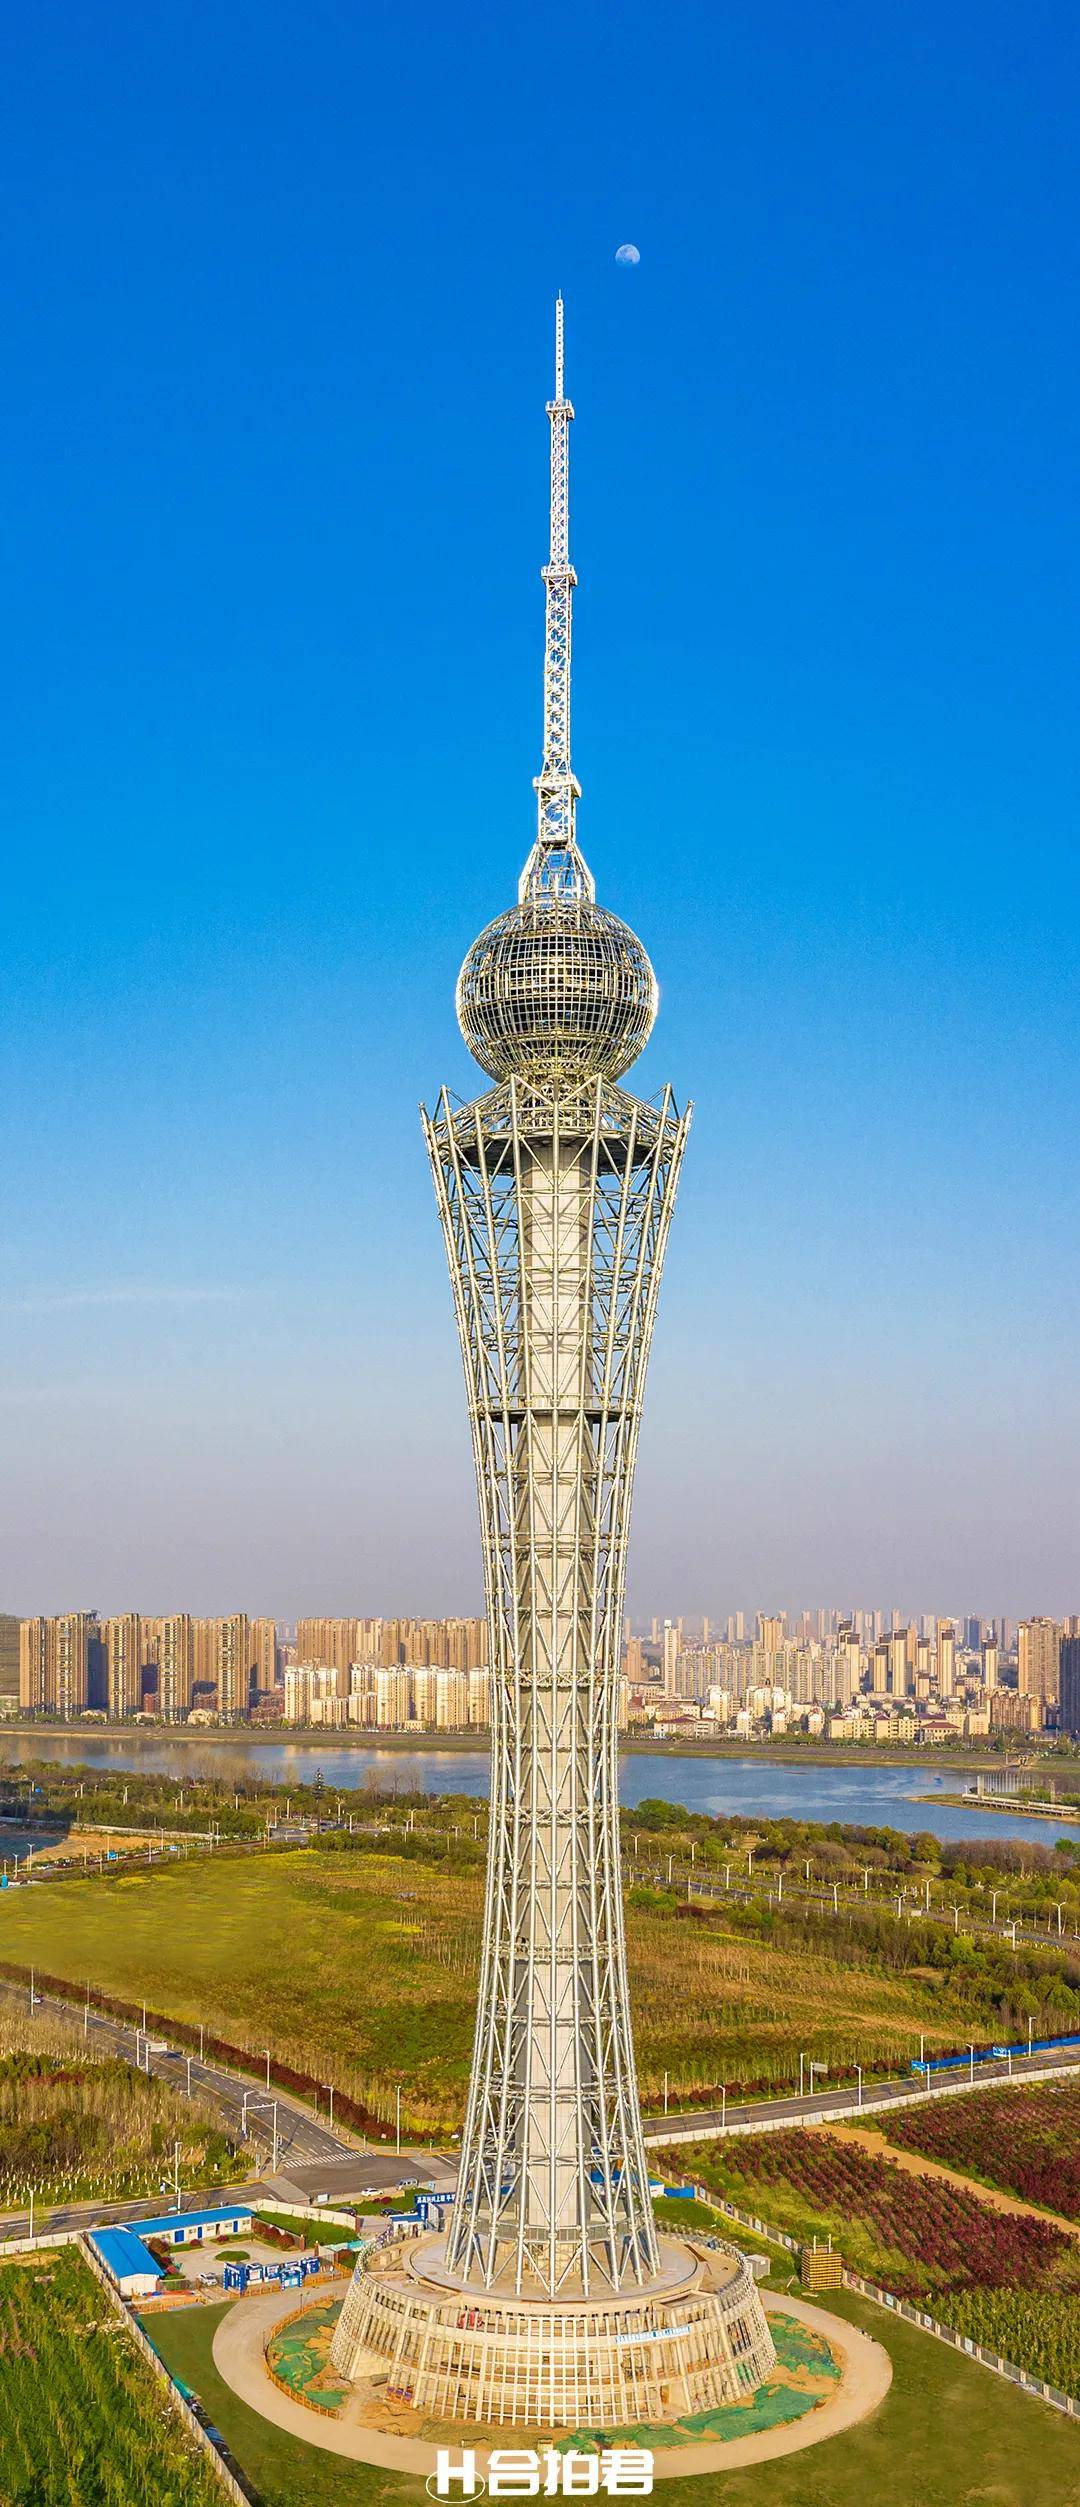 【六安广播电视发射塔】2021年最新的安徽超高地标目前主体建筑已经